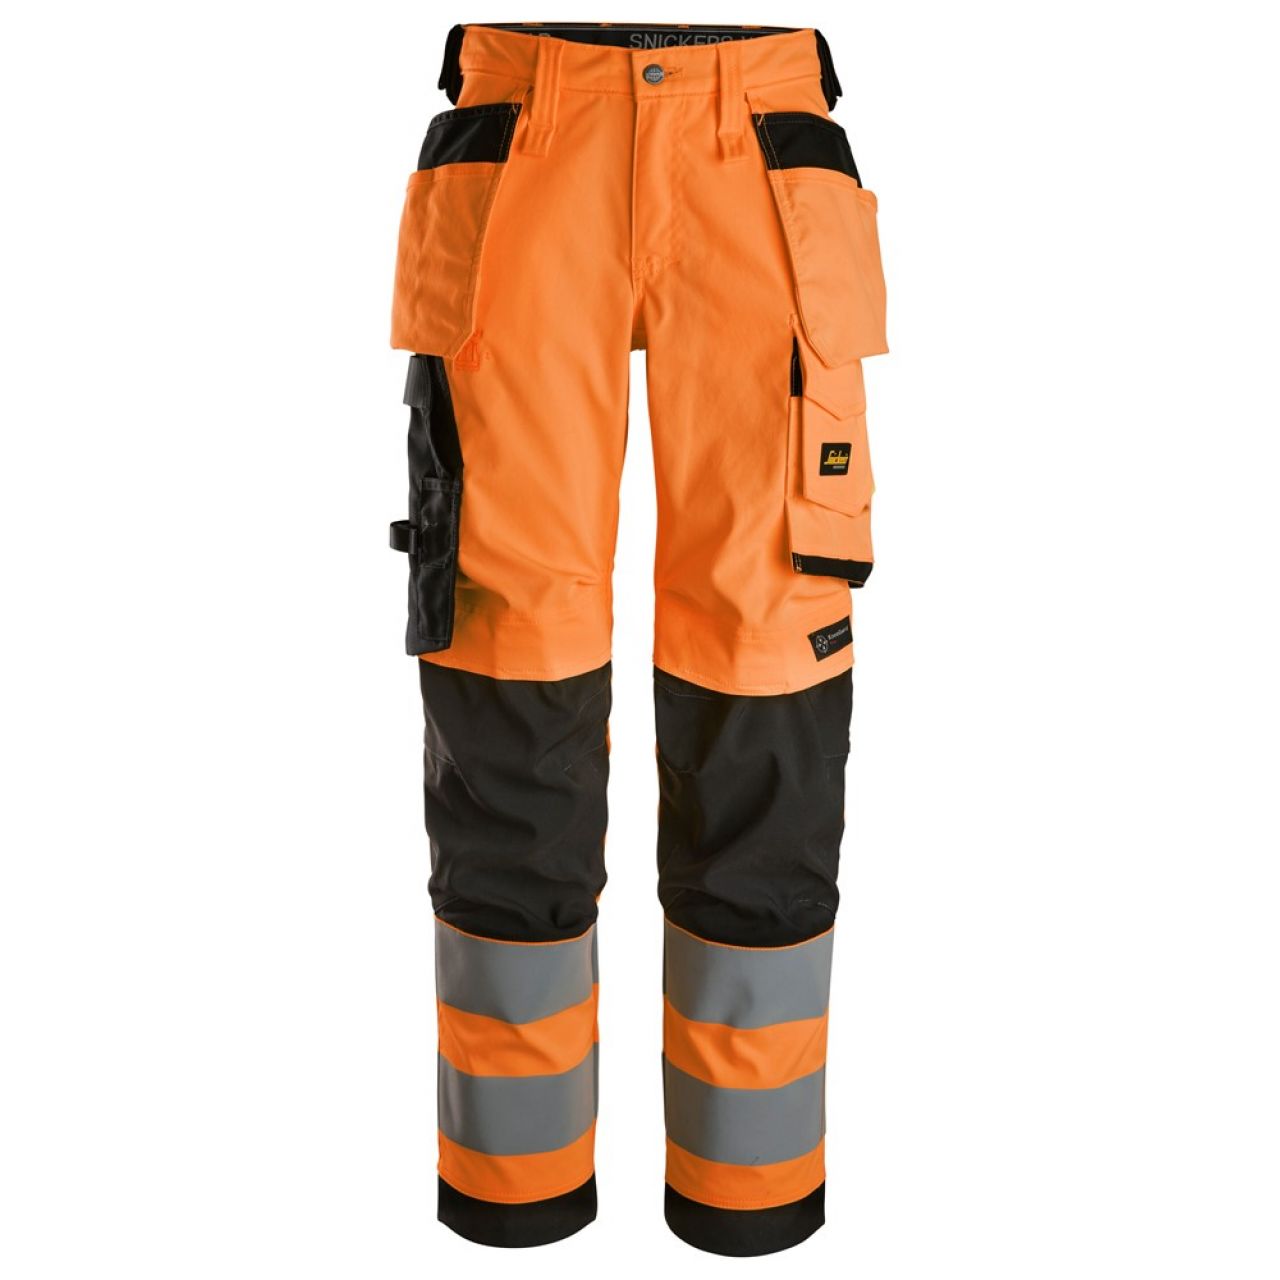 6743 Pantalones largos de trabajo elásticos de alta visibilidad clase 2 para mujer con bolsillos flotantes naranja-negro talla 40